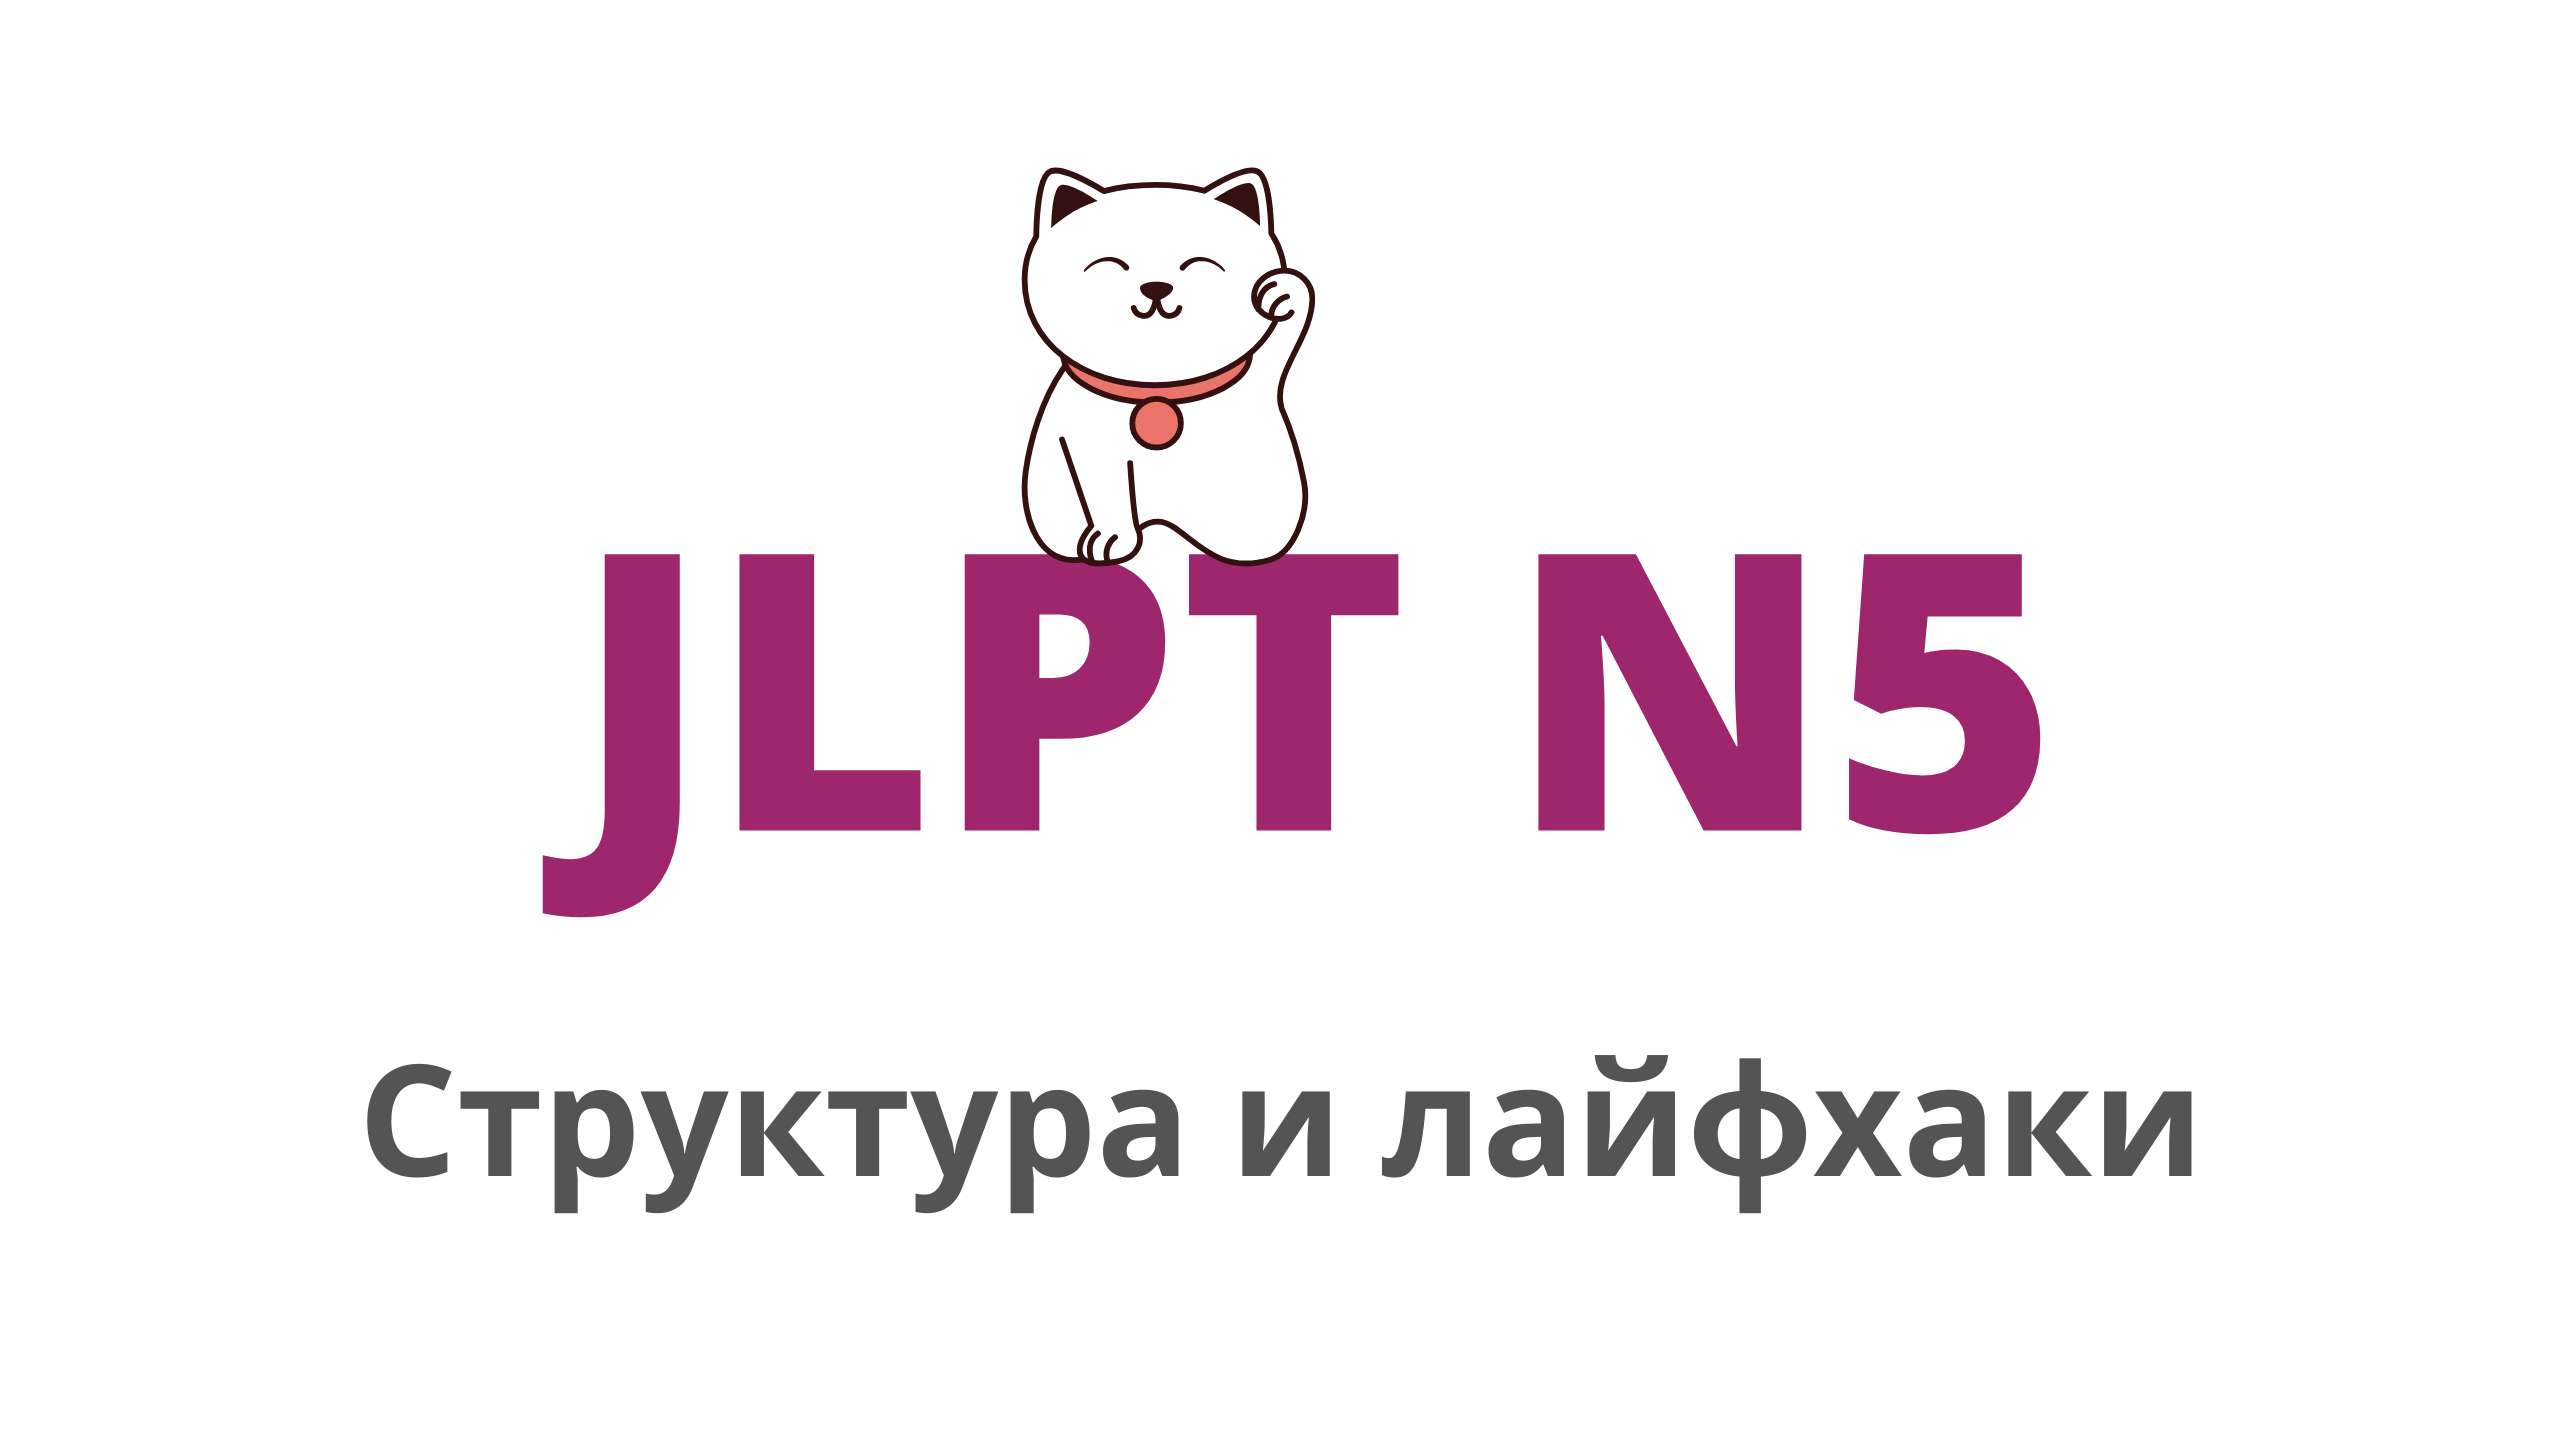 Всё про экзамен JLPT (нореку сикэн) | Примеры заданий JLPT N5